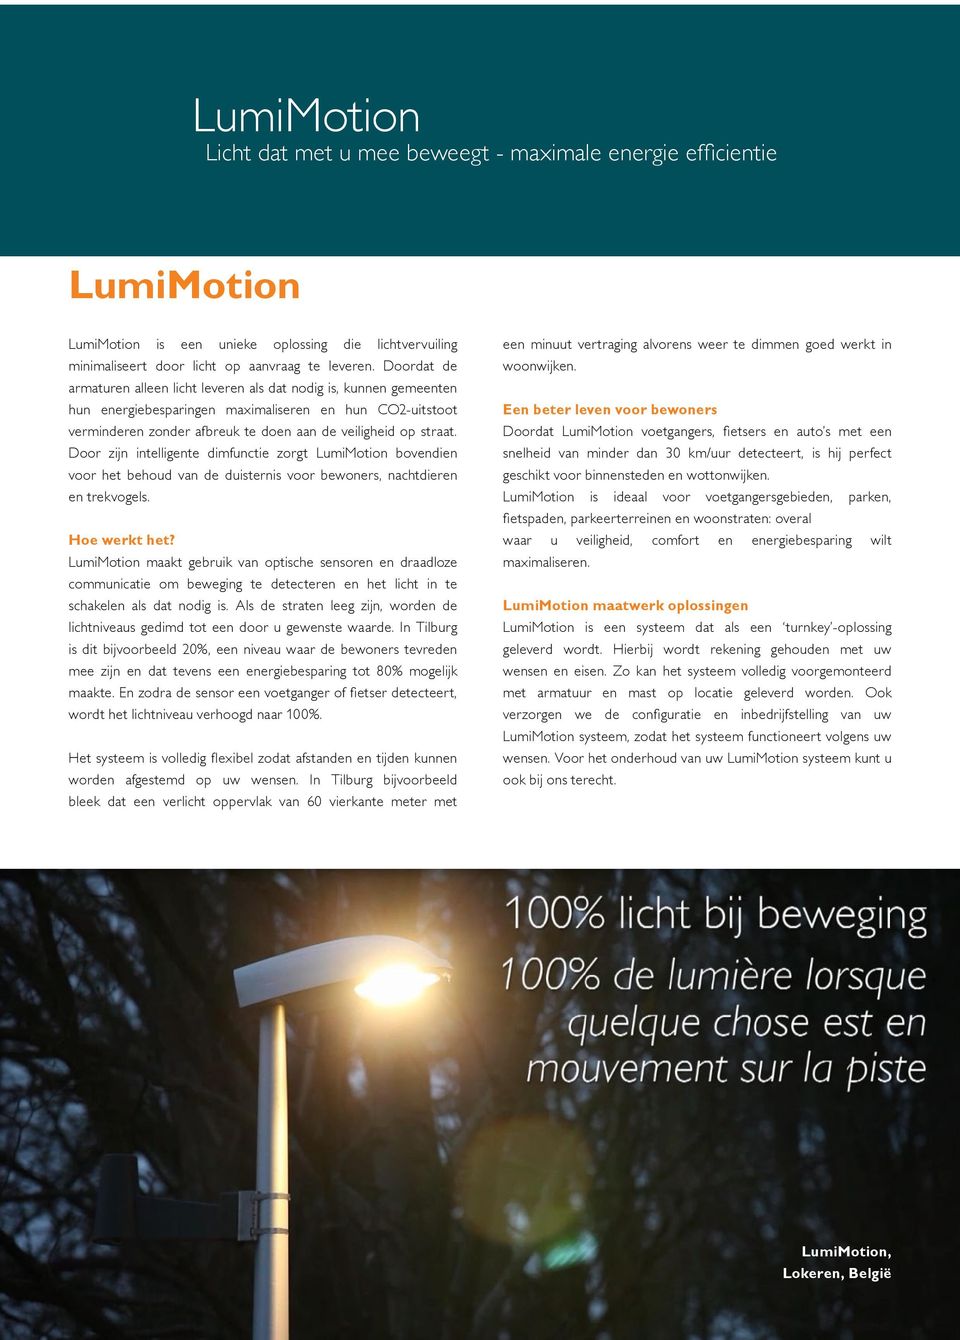 Door zijn intelligente dimfunctie zorgt LumiMotion bovendien voor het behoud van de duisternis voor bewoners, nachtdieren en trekvogels. Hoe werkt het?